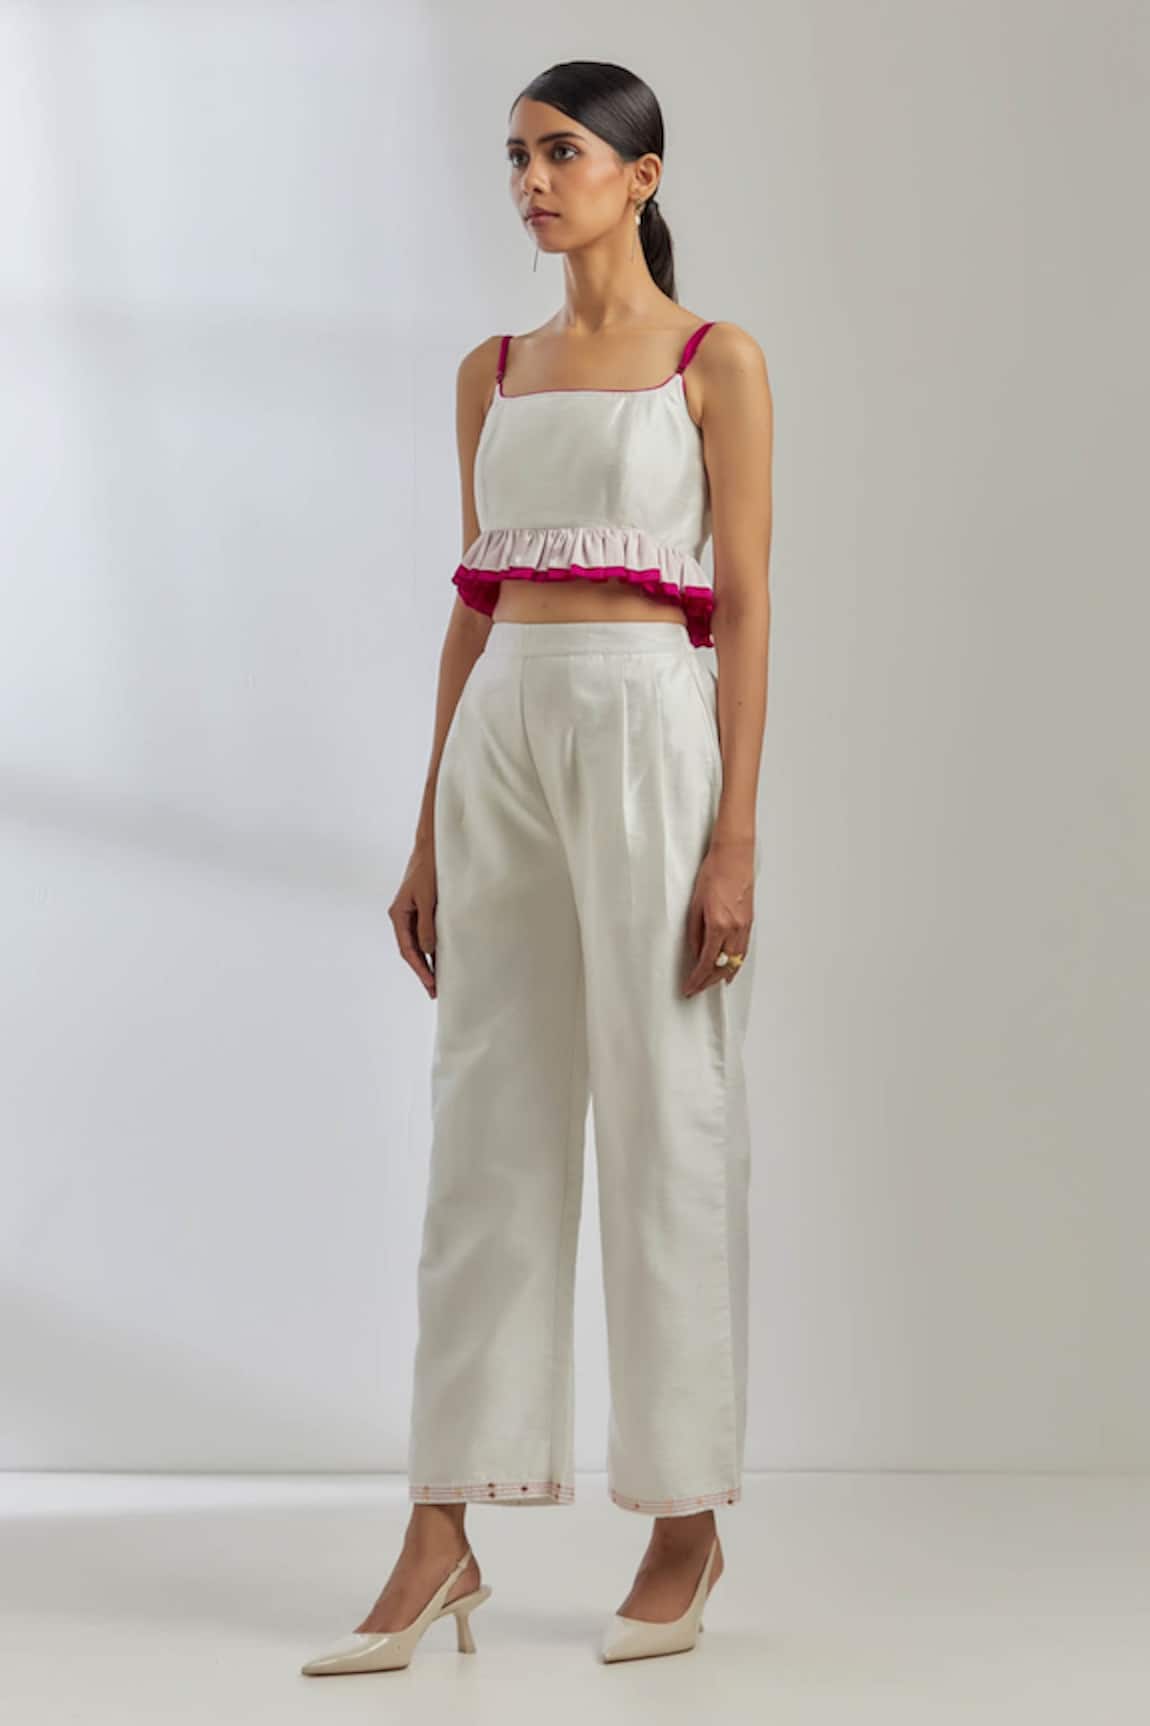 FESTIVE WEAR WOMEN PalazzoPants  Leggings  Dressy Raw Silk Straight  Cut Trousers